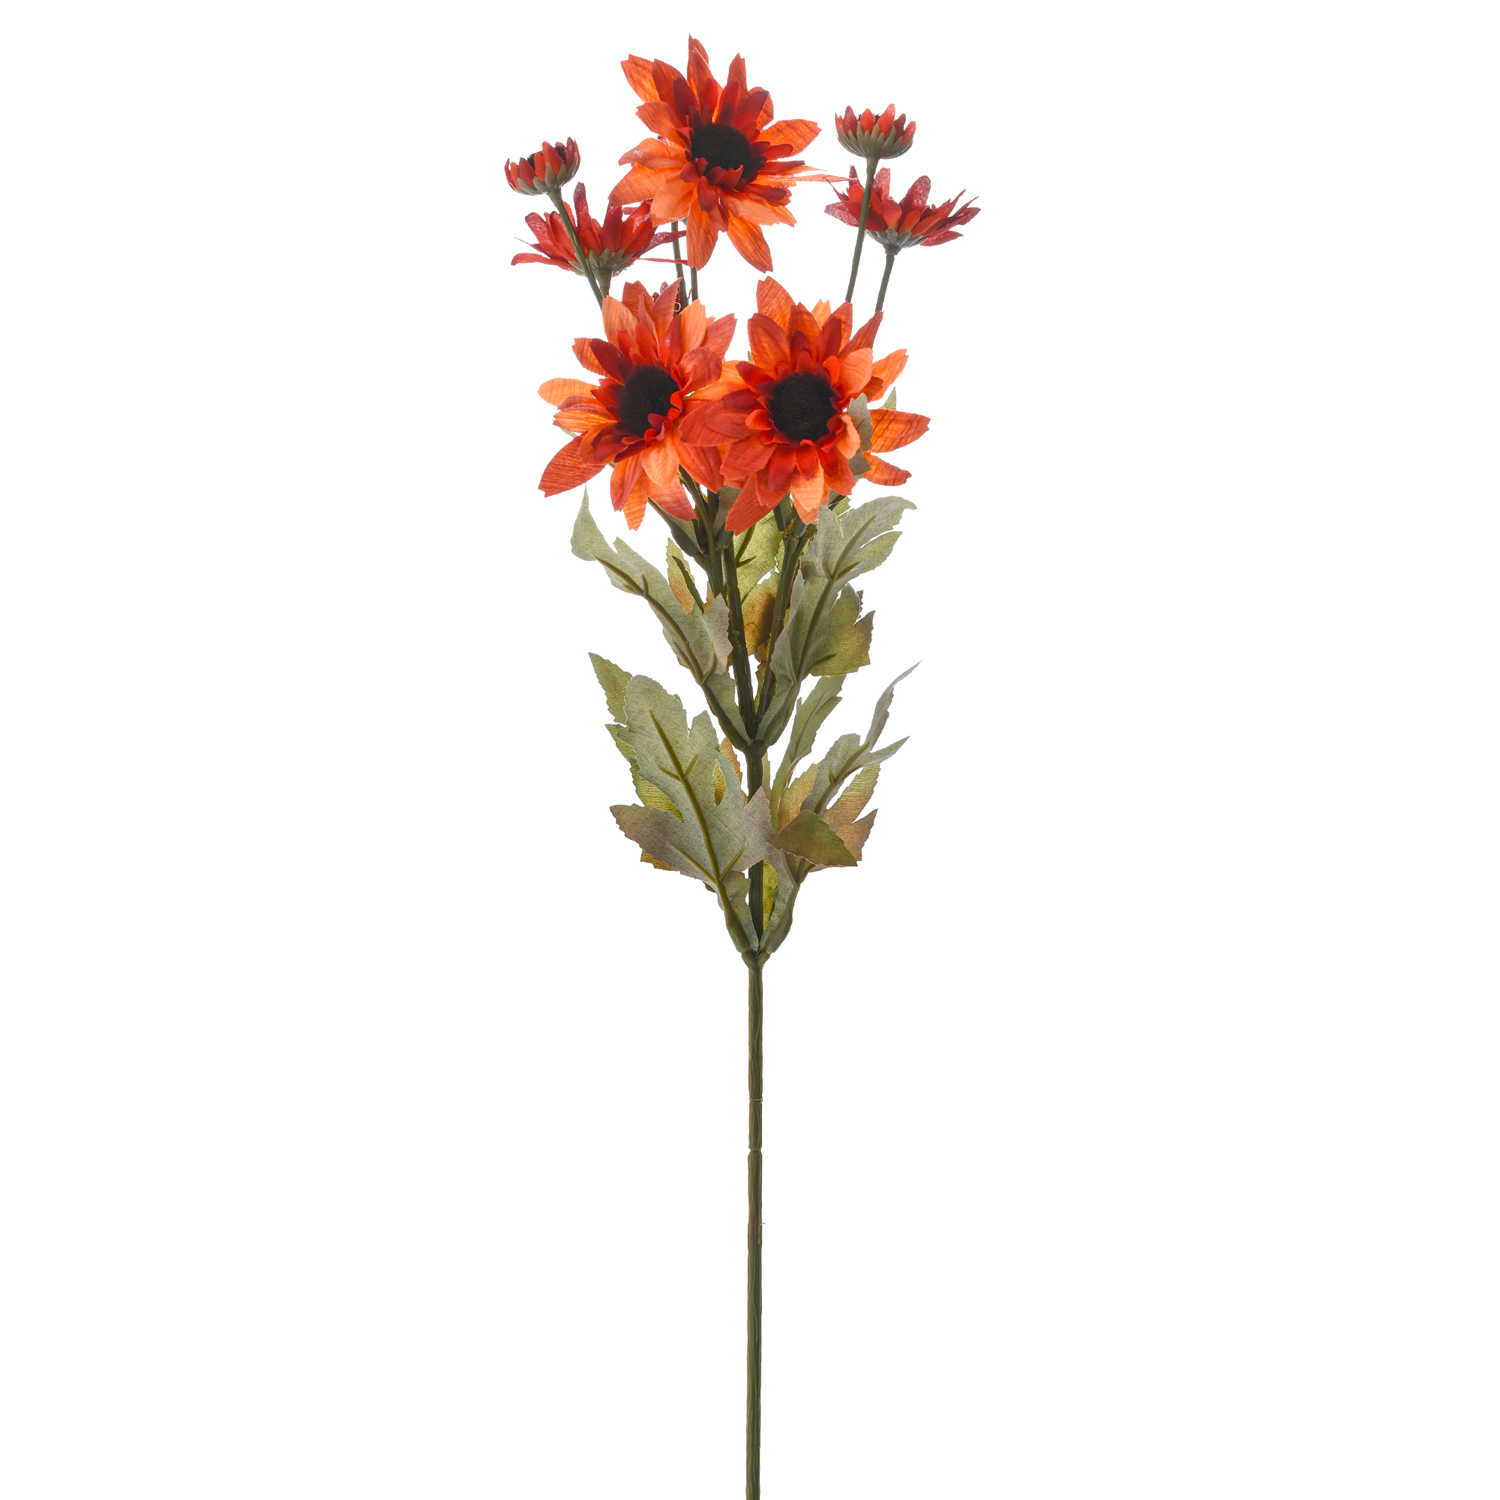 Yapay Çiçek Büyük Papatya Dalı Bakır Kırmızı 65 Cm.